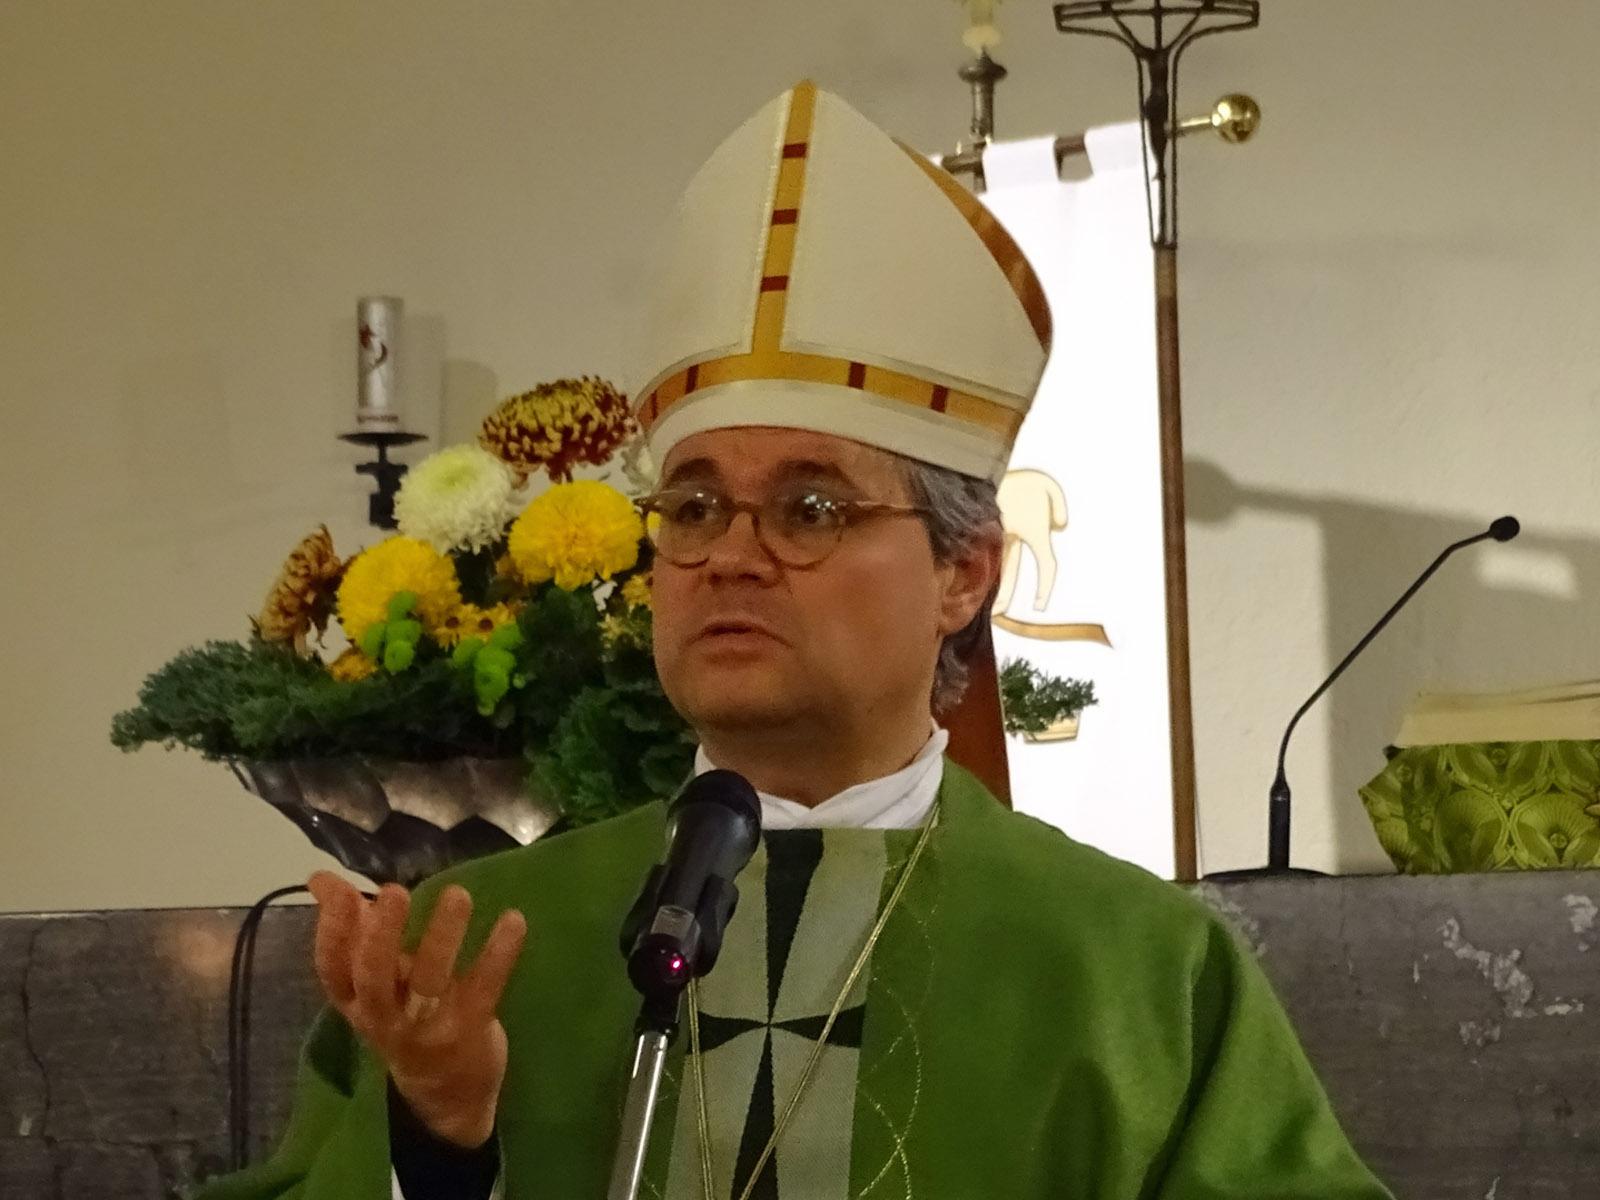 Groß-Gerau, 07.11.2019: Weihbischof Dr. Udo Markus Bentz war zur Visitation im Pfarreienverbund Groß-Gerau / Büttelborn.